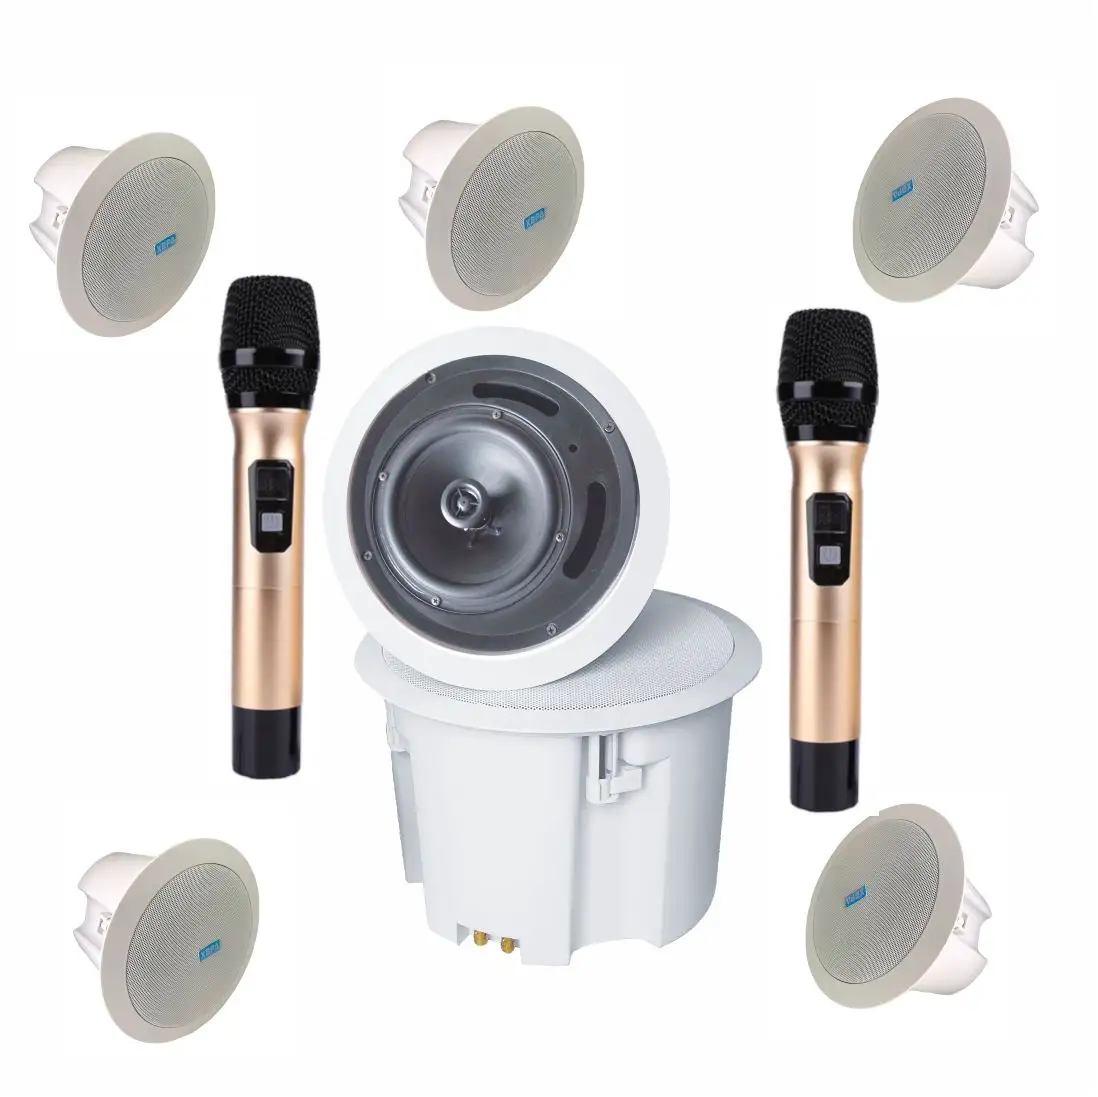 5.1/7.1 karaoke hoparlörü ev sinema sistemi destekler mobil uygulama kontrol